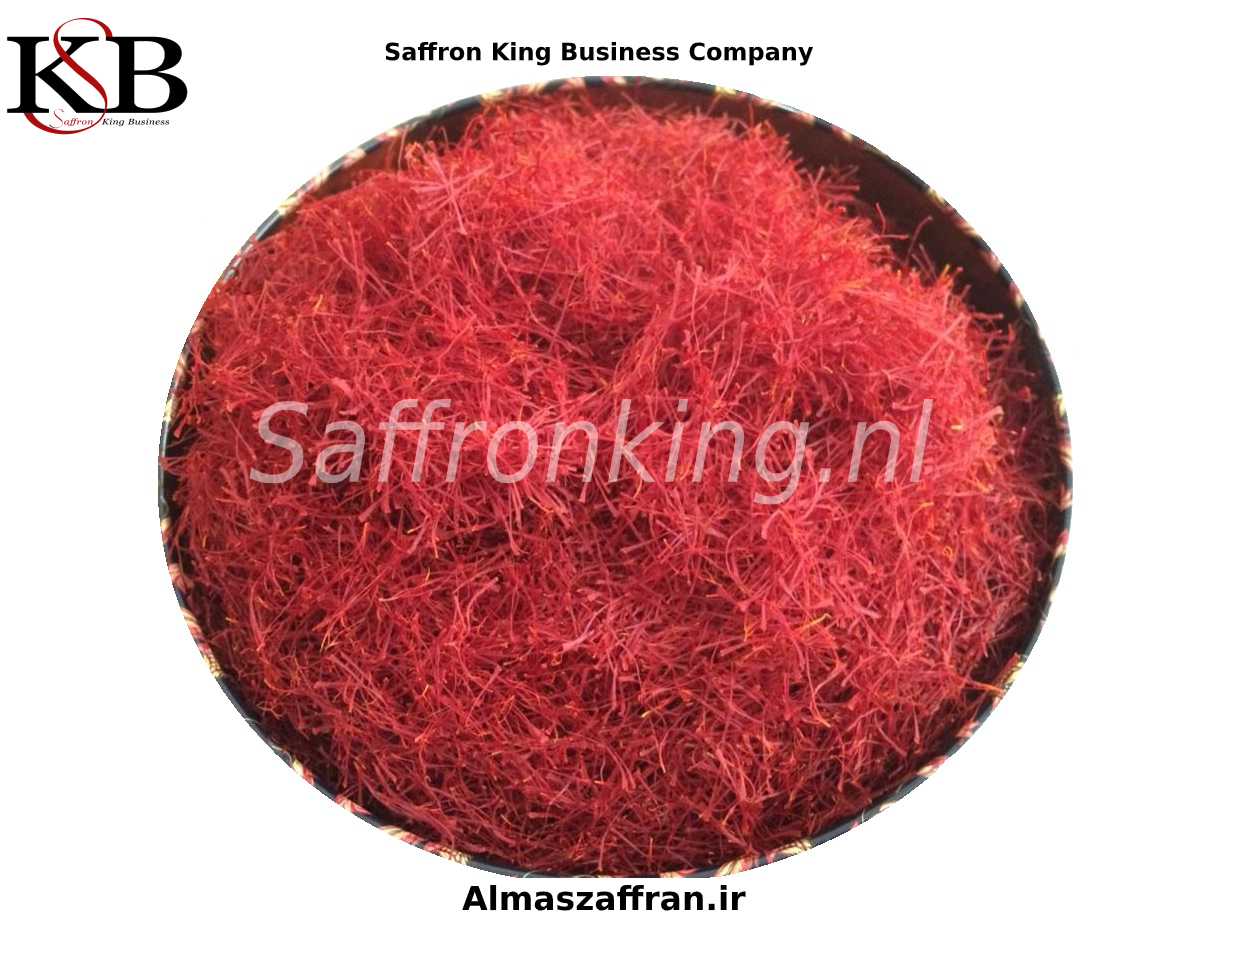 Kauf von reinem Safran pro Kilo auf dem Safranmarkt